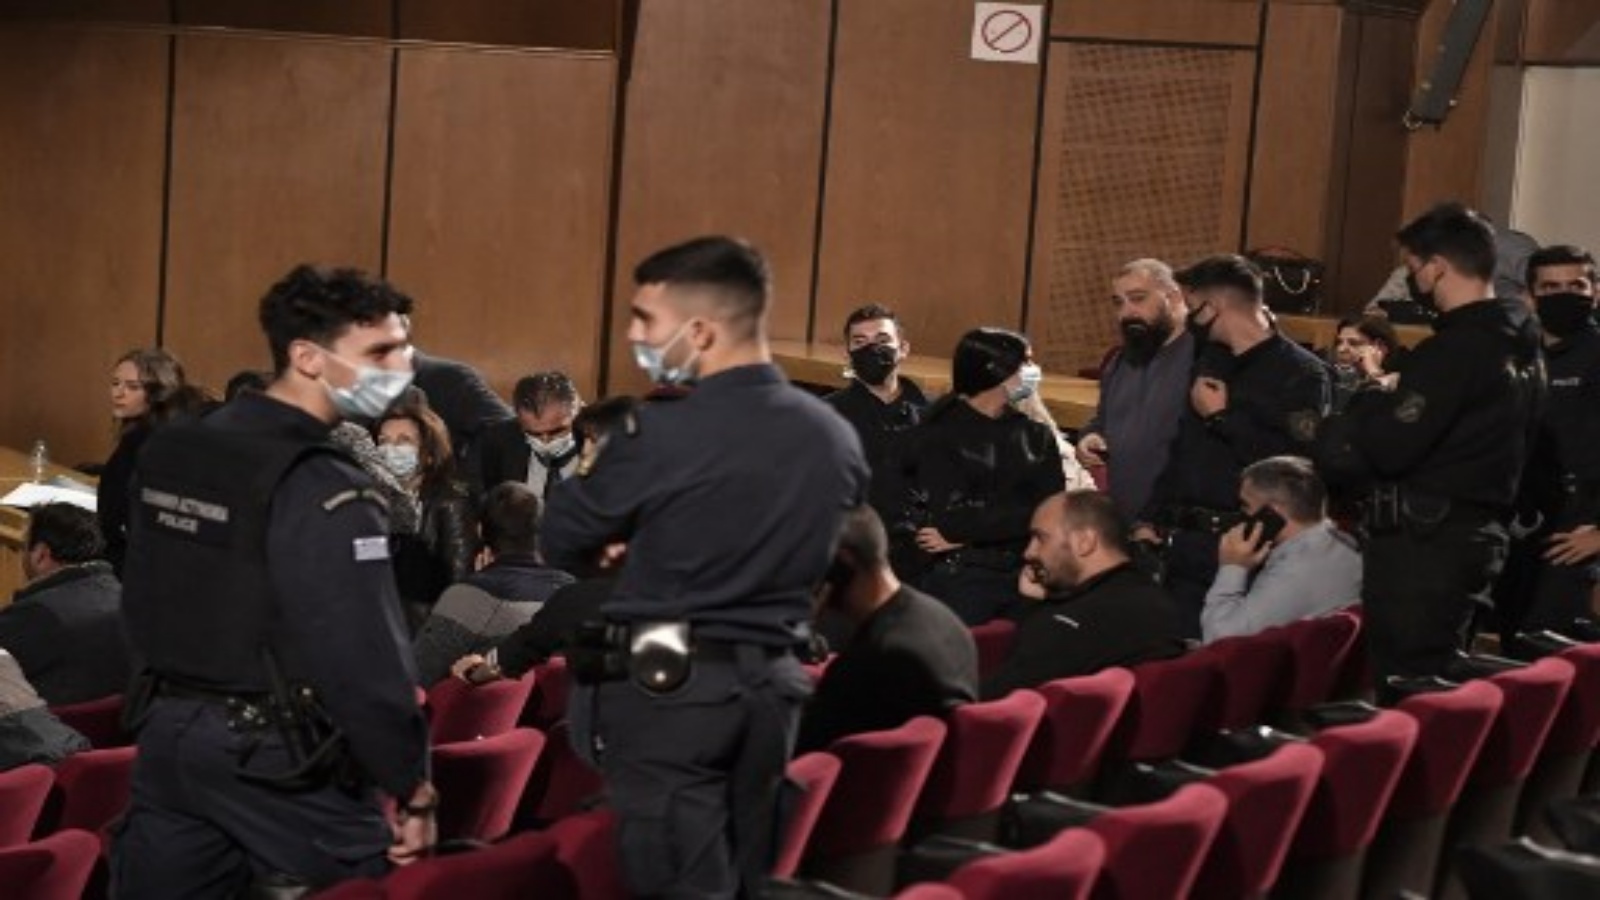 الشرطة اليونانية تحرس أعضاء جماعة الفجر الذهبي للنازيين الجدد ليتم القبض عليهم بعد الحكم النهائي في محاكمة مدتها خمس سنوات لأعضاء بارزين في Golden Dawn أدينوا بقتل عام 2013 لمغني راب مناهض للفاشية في أثينا في 22 أكتوبر 2020